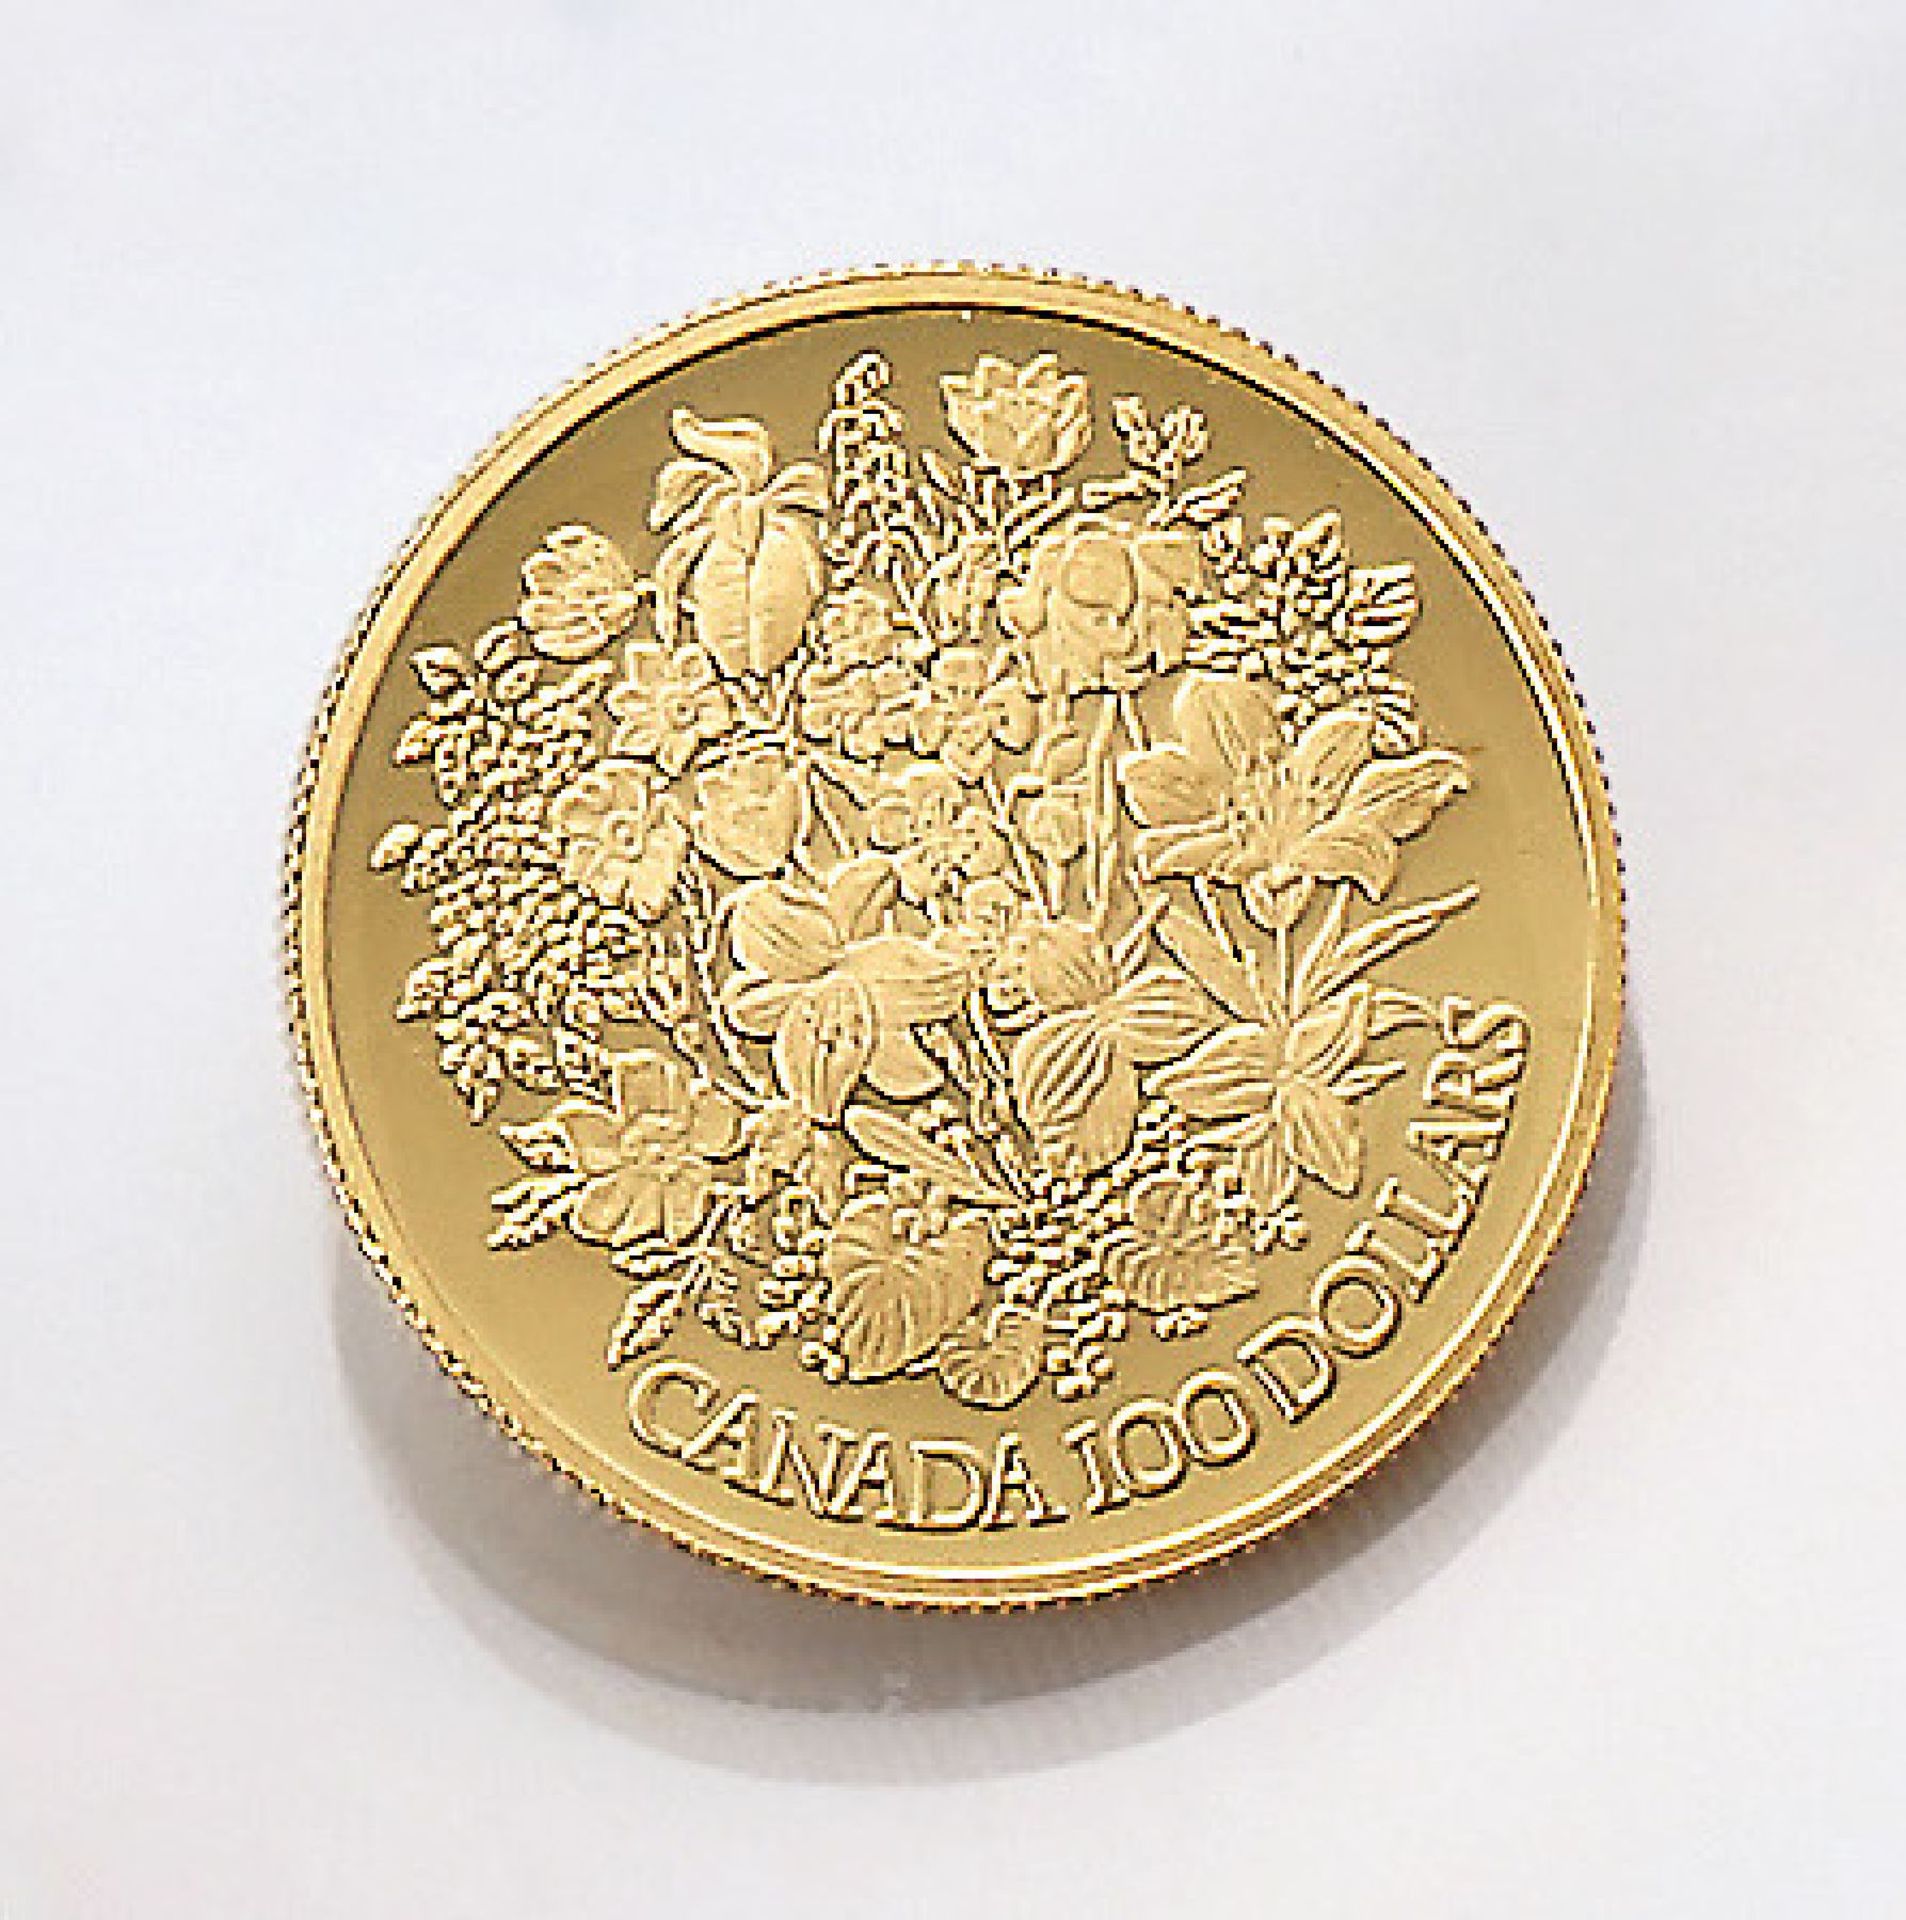 Goldmünze, 100 Dollars, Canada, 1977, zum 25-jährigen Regierungsjubiläum von Elizabeth II.Gold coin,